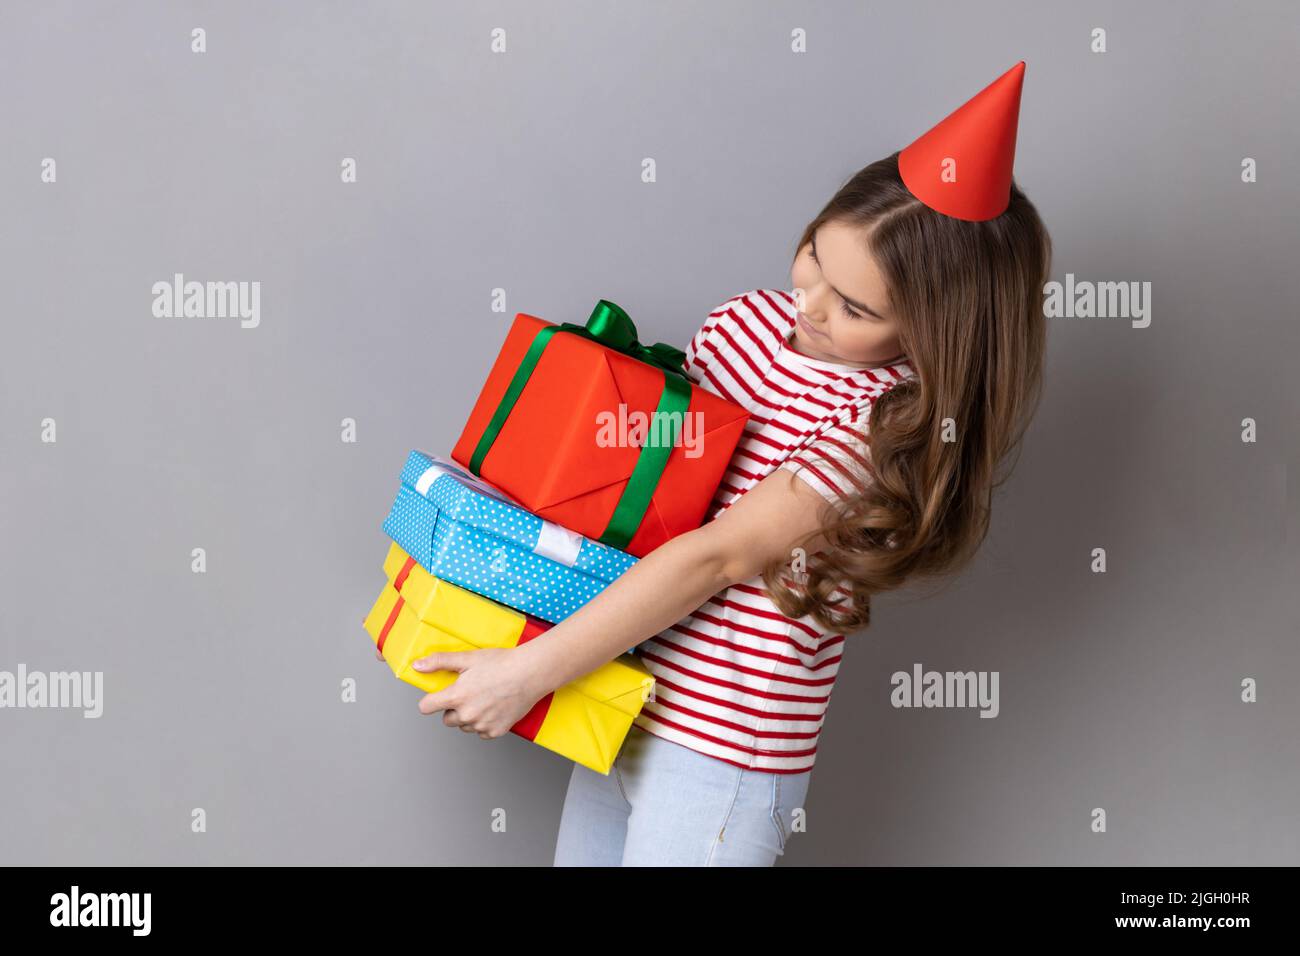 Seitenansicht Porträt eines kleinen Mädchens, das gestreiftes T-Shirt trägt und im Partykegel einen schweren Stapel von Geschenken hält, um ihren Geburtstag zu feiern. Innenaufnahme des Studios isoliert auf grauem Hintergrund. Stockfoto